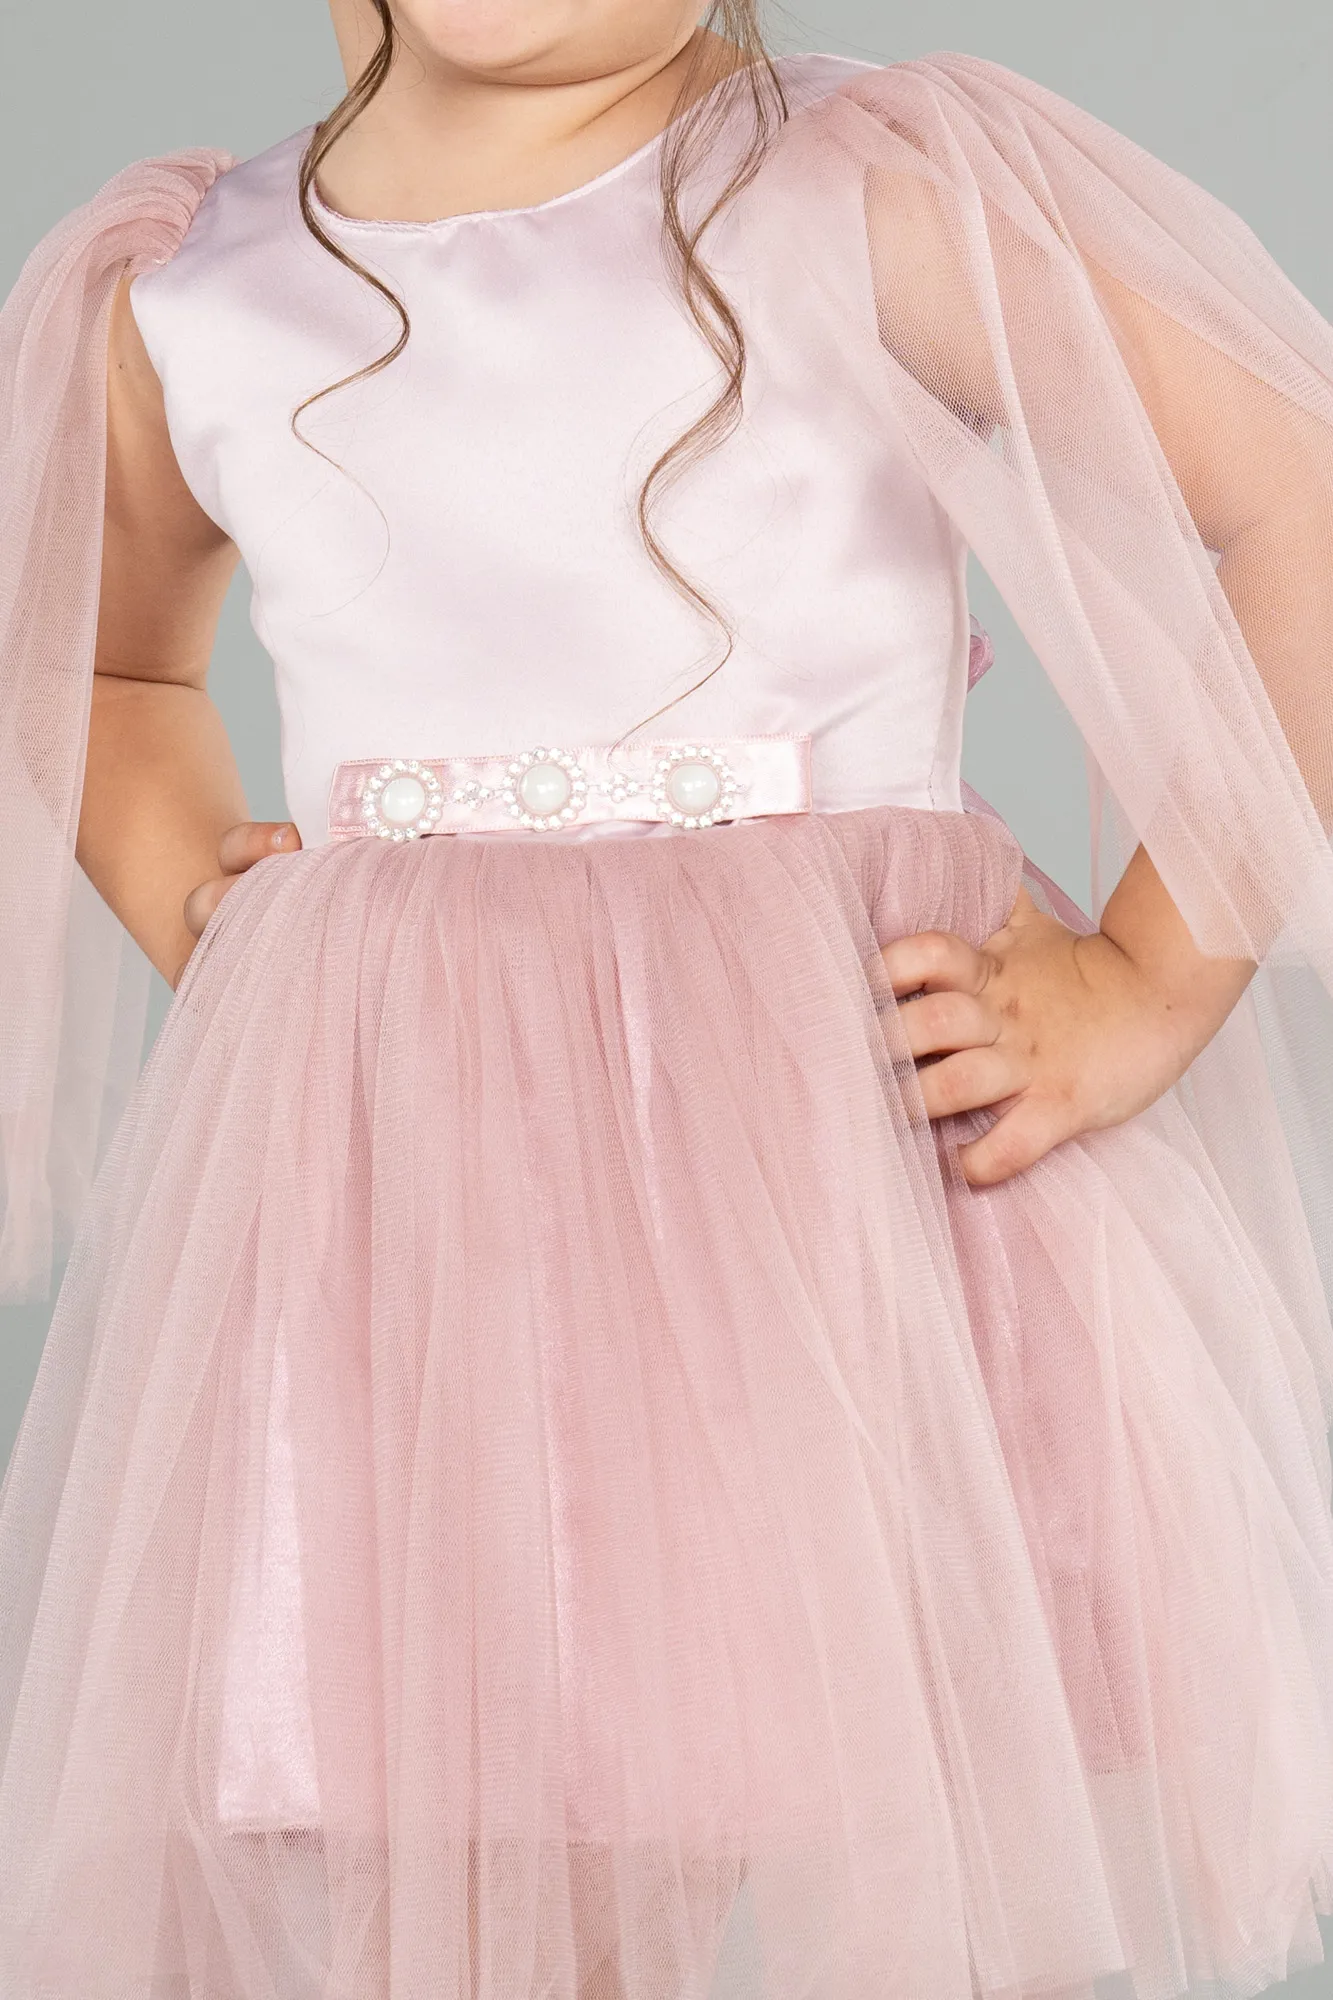 Rose Colored-Short Girl Dress ABK1797